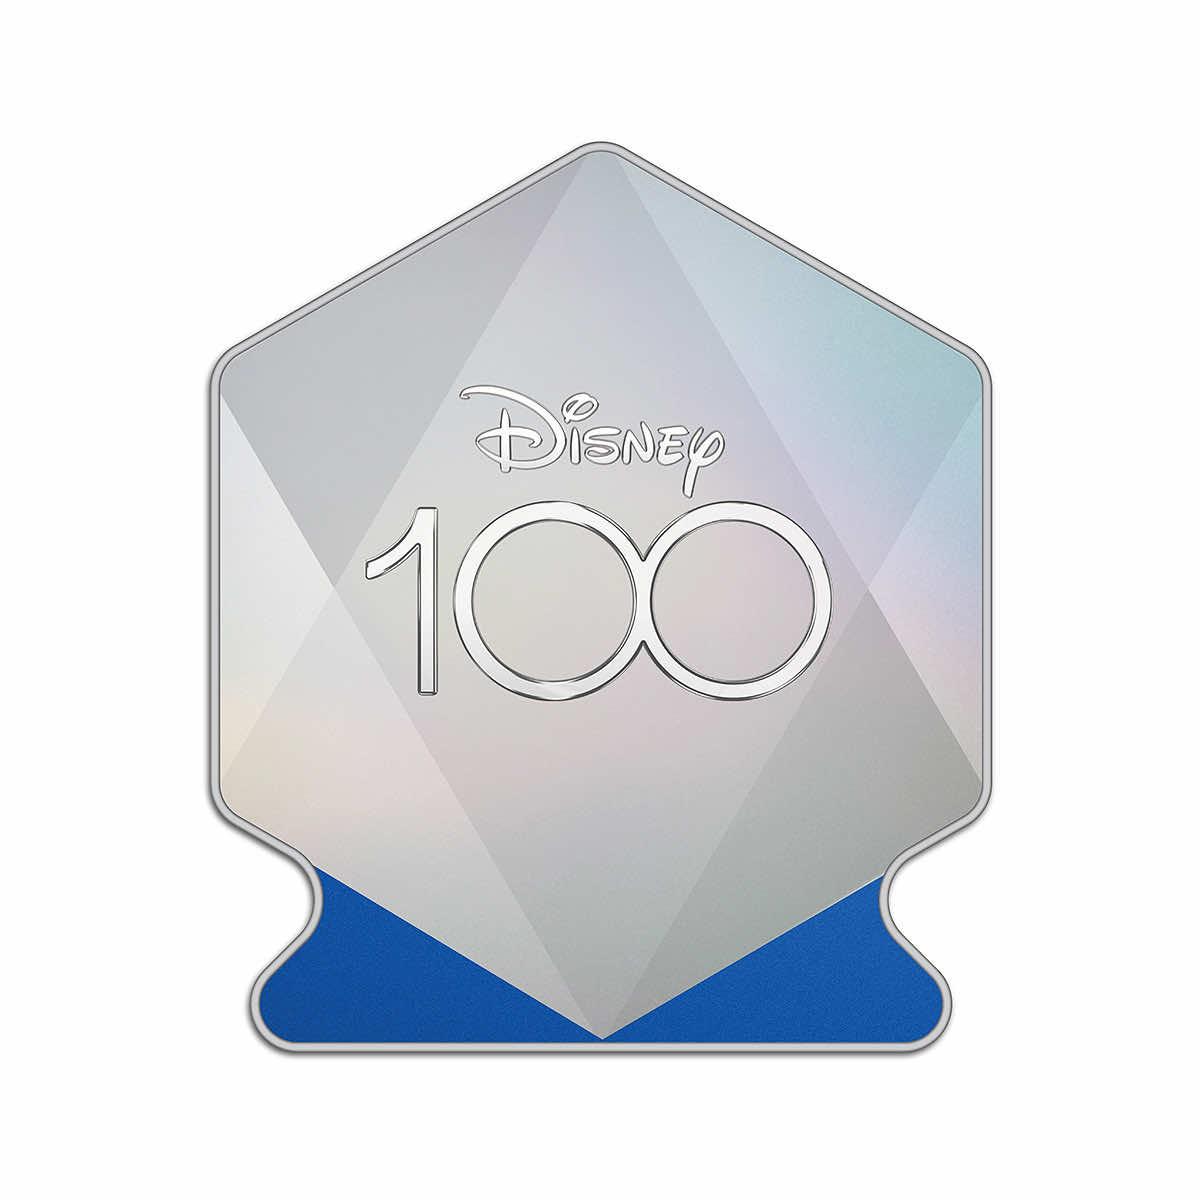 Disney 100 PEZ Gift Tin Gift, Disney 100